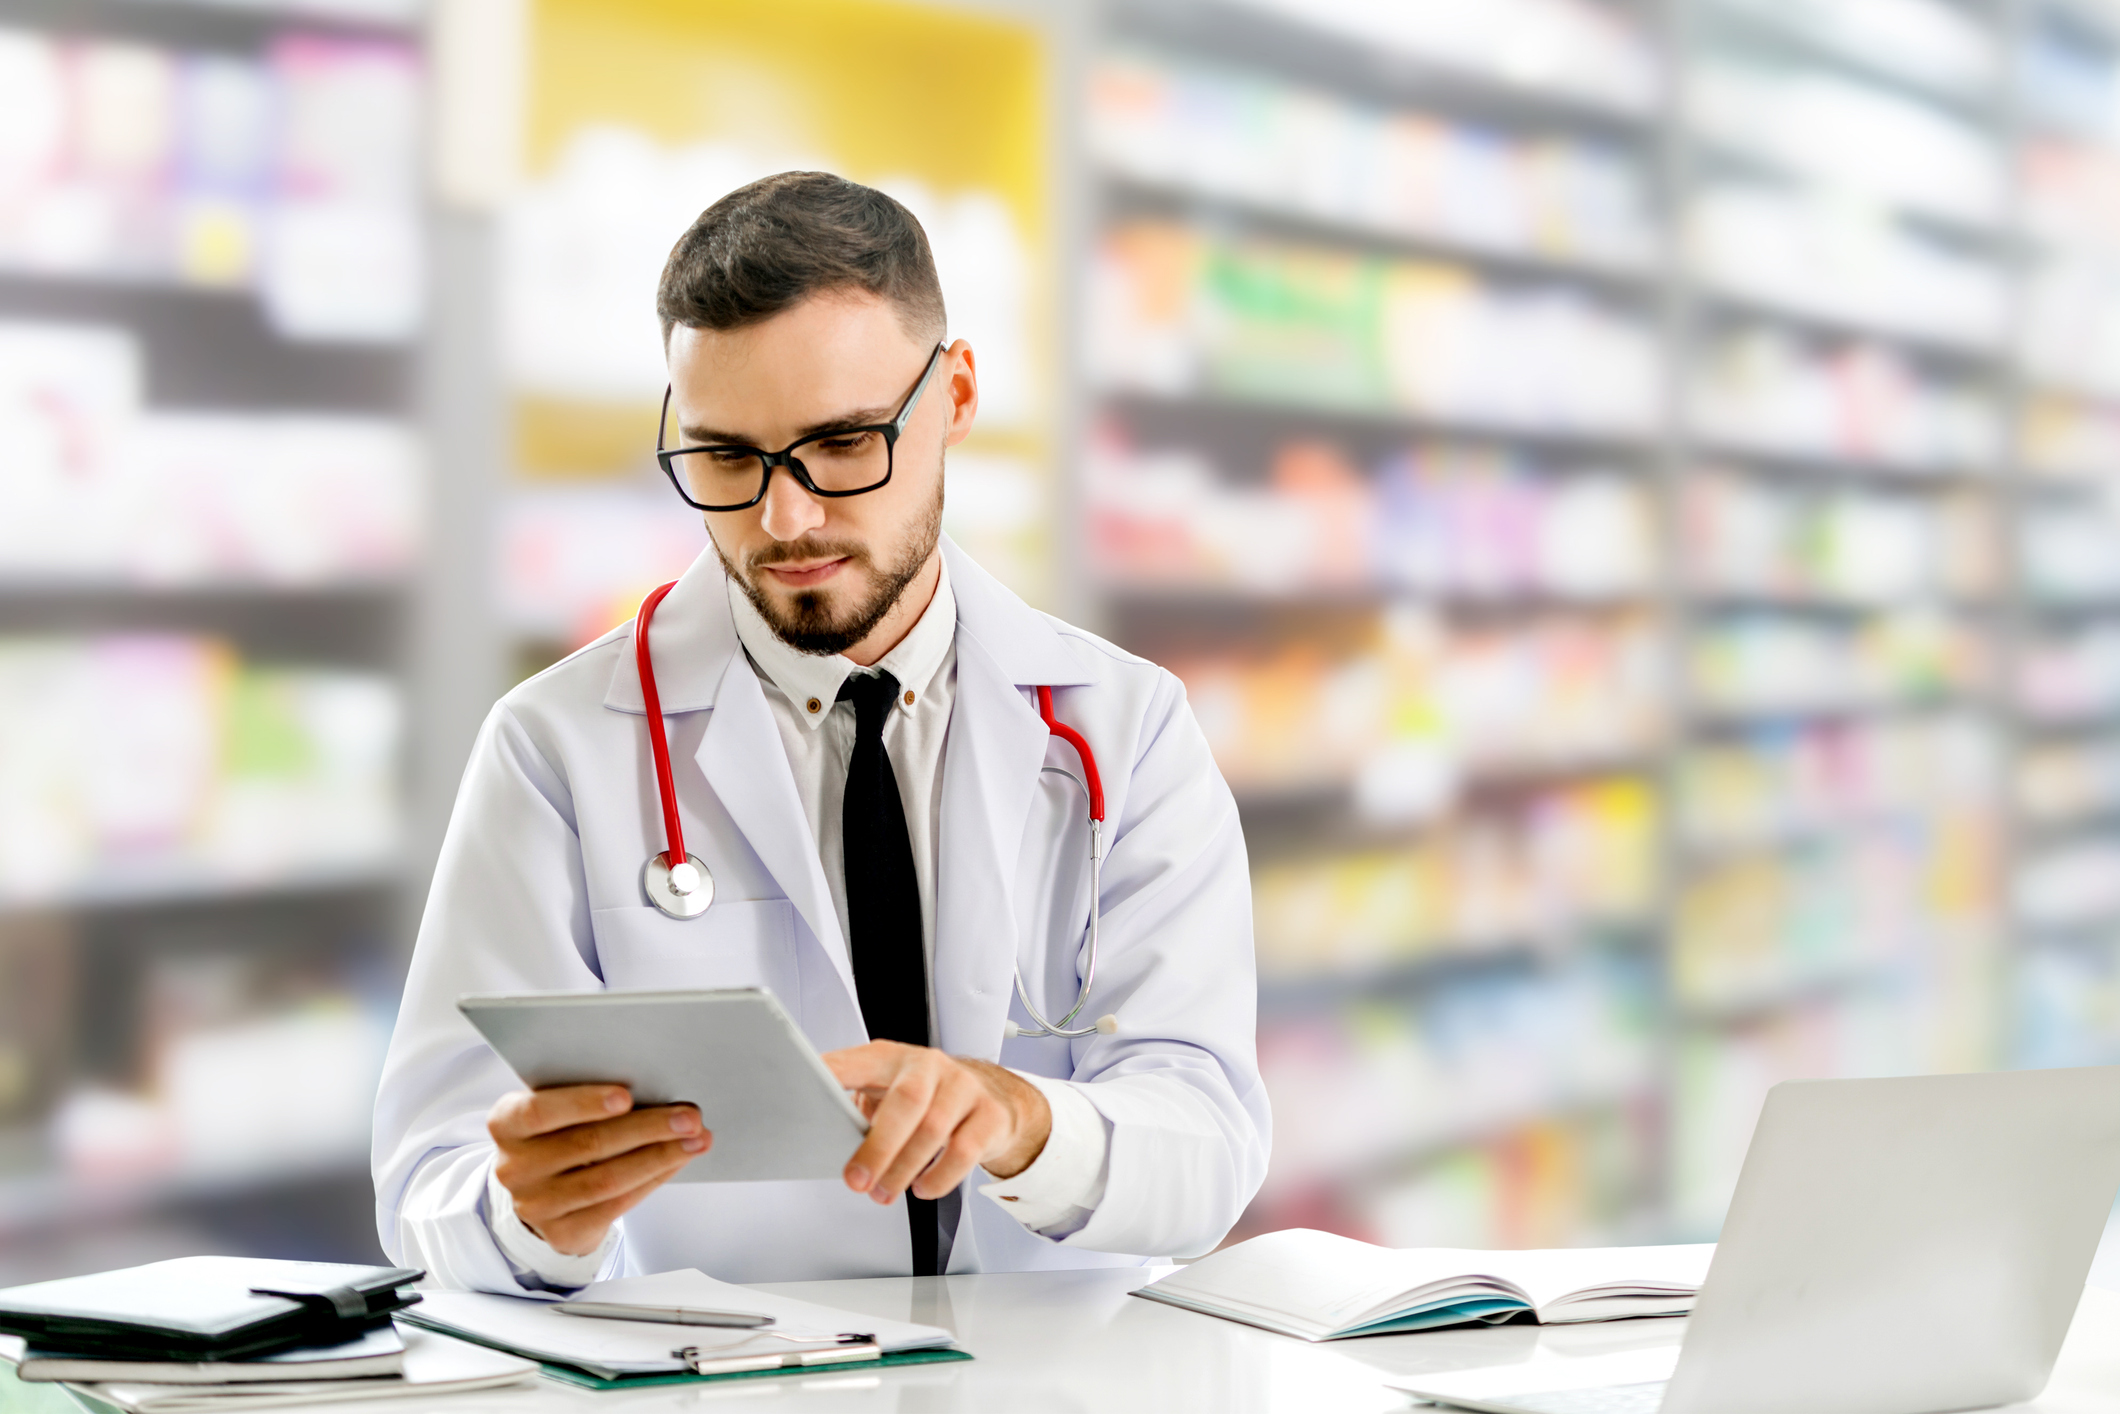 La farmacia actualiza conocimientos sobre nutrición, alergias, patologías y aditivos